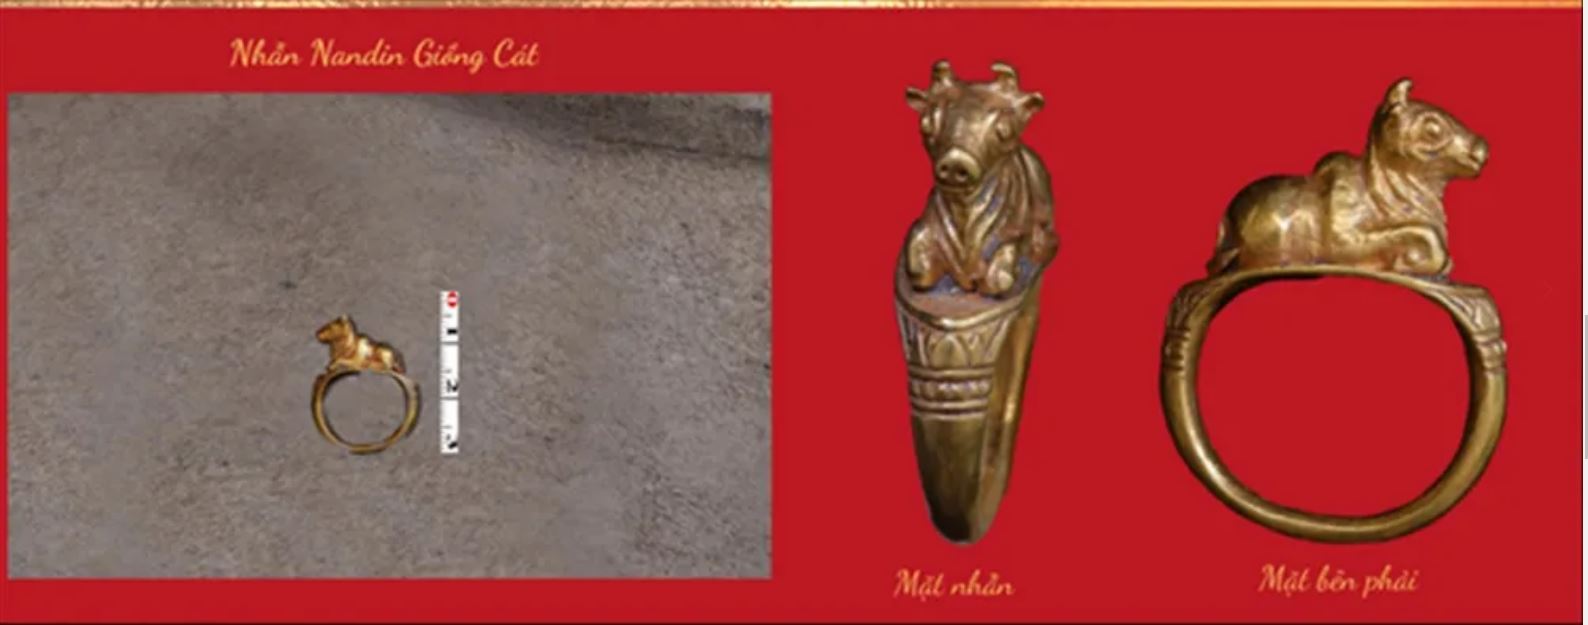 Cổ vật quốc gia phát hiện tại cuộc khai quật Óc Eo Ba Thê min - Phát hiện quan trọng cho hồ sơ UNESCO Óc Eo